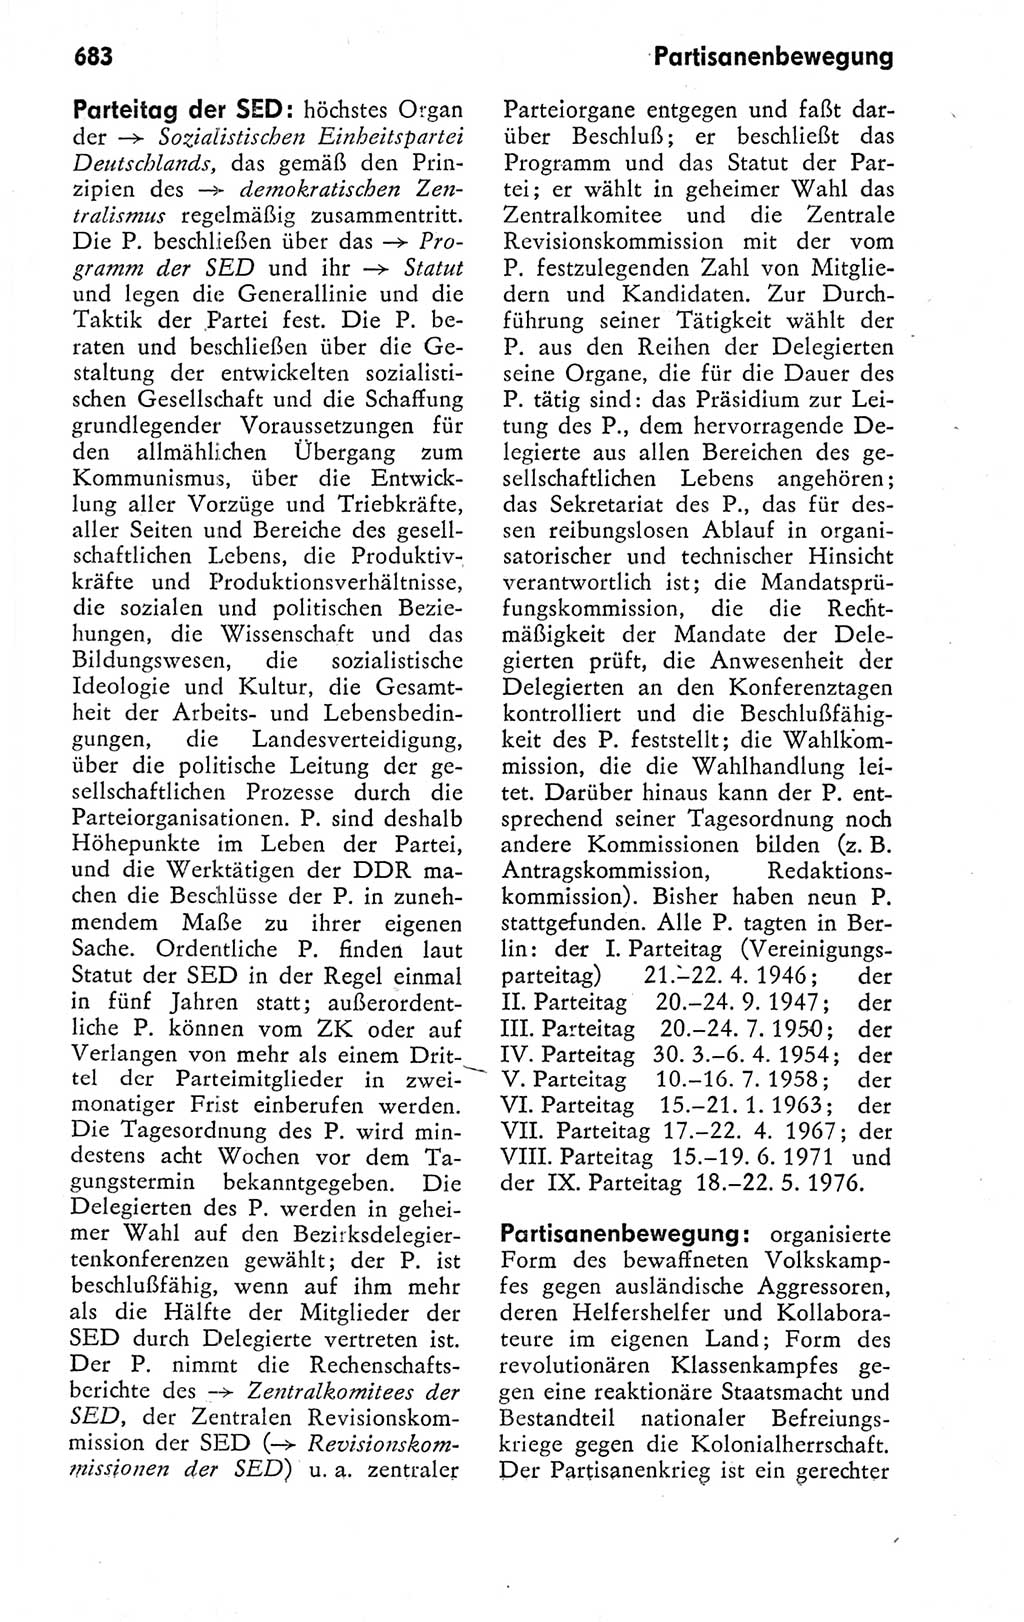 Kleines politisches Wörterbuch [Deutsche Demokratische Republik (DDR)] 1978, Seite 683 (Kl. pol. Wb. DDR 1978, S. 683)